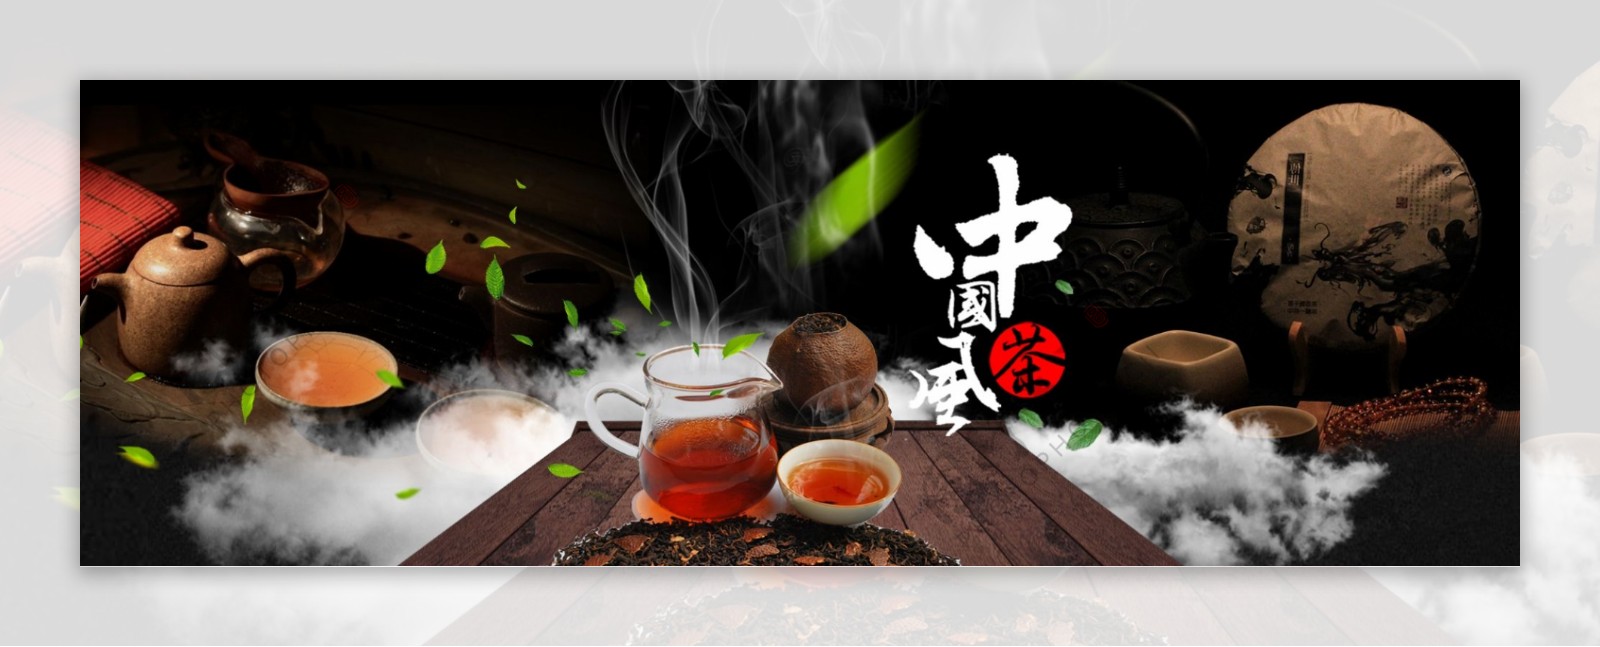 天猫电商818全球狂欢节99聚星节促销食品饮品养生茶海报banner模板